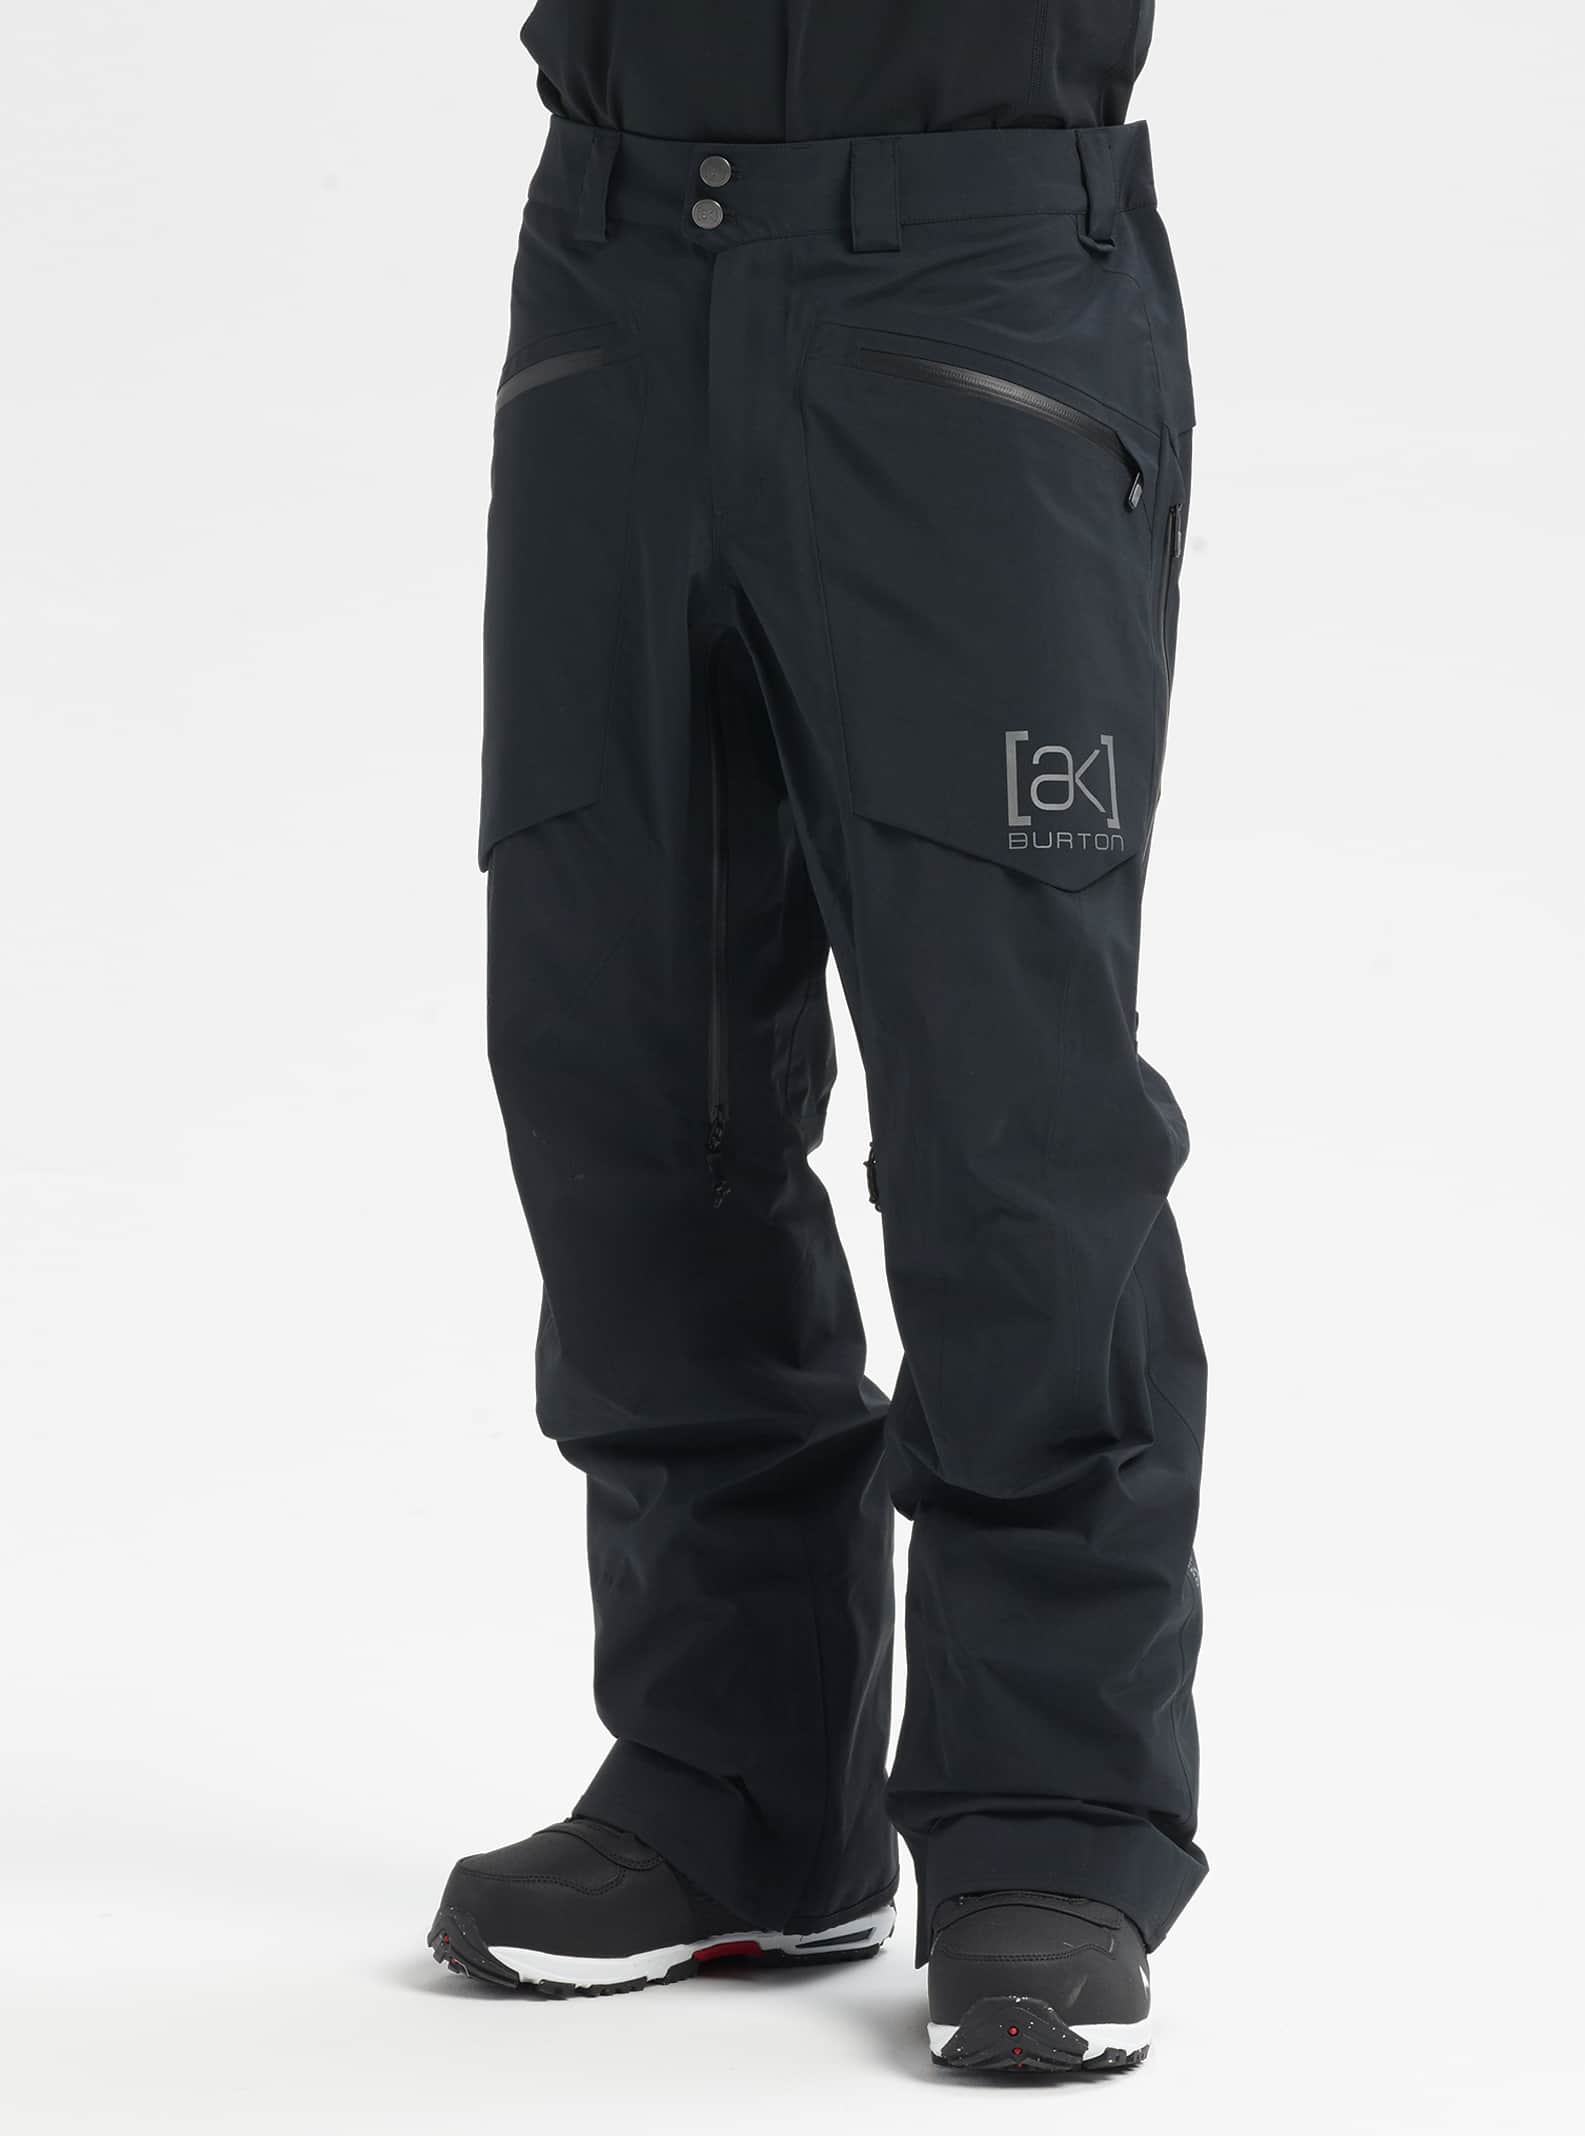 Men's [ak] Hover GORE‑TEX PRO 3L Pants | Burton.com Winter 2023 DK